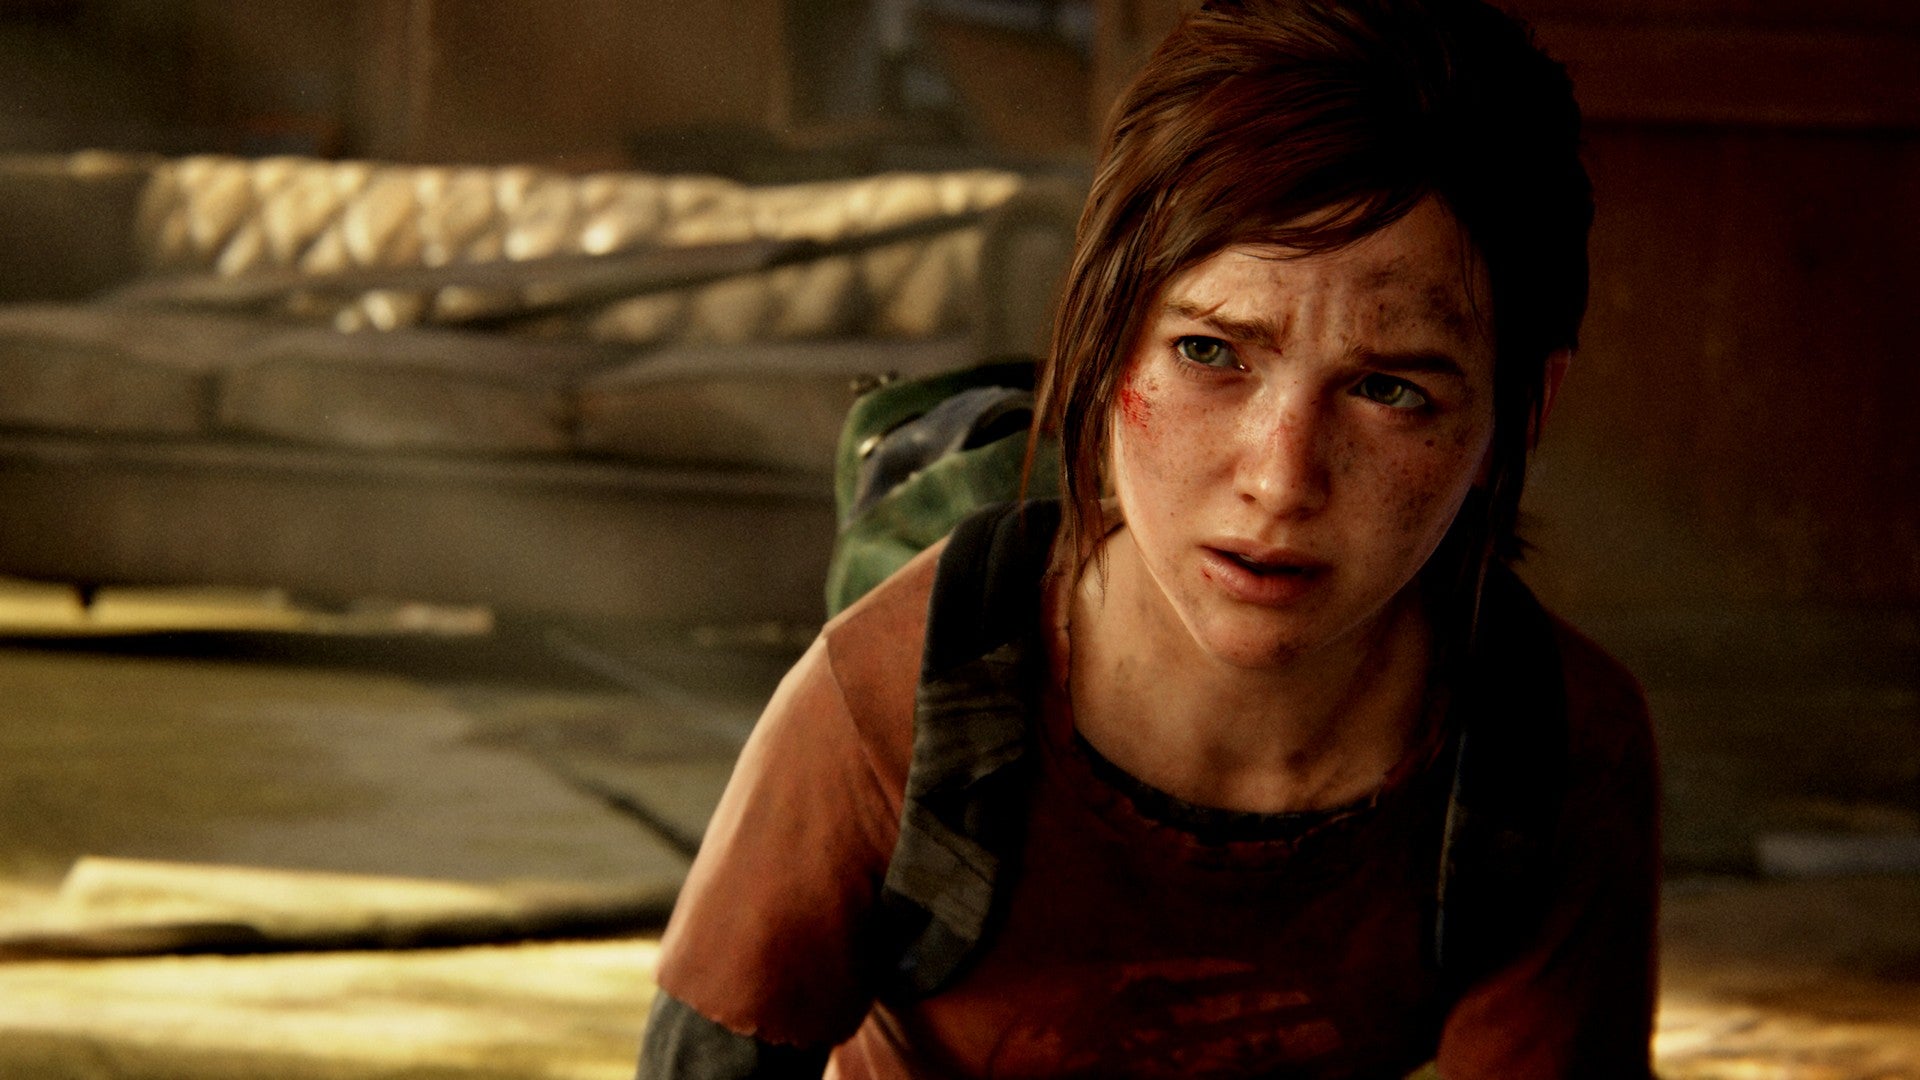 Bilder zu The Last of Us Part 1 ist keine Geldmacherei, sagt ein Entwickler